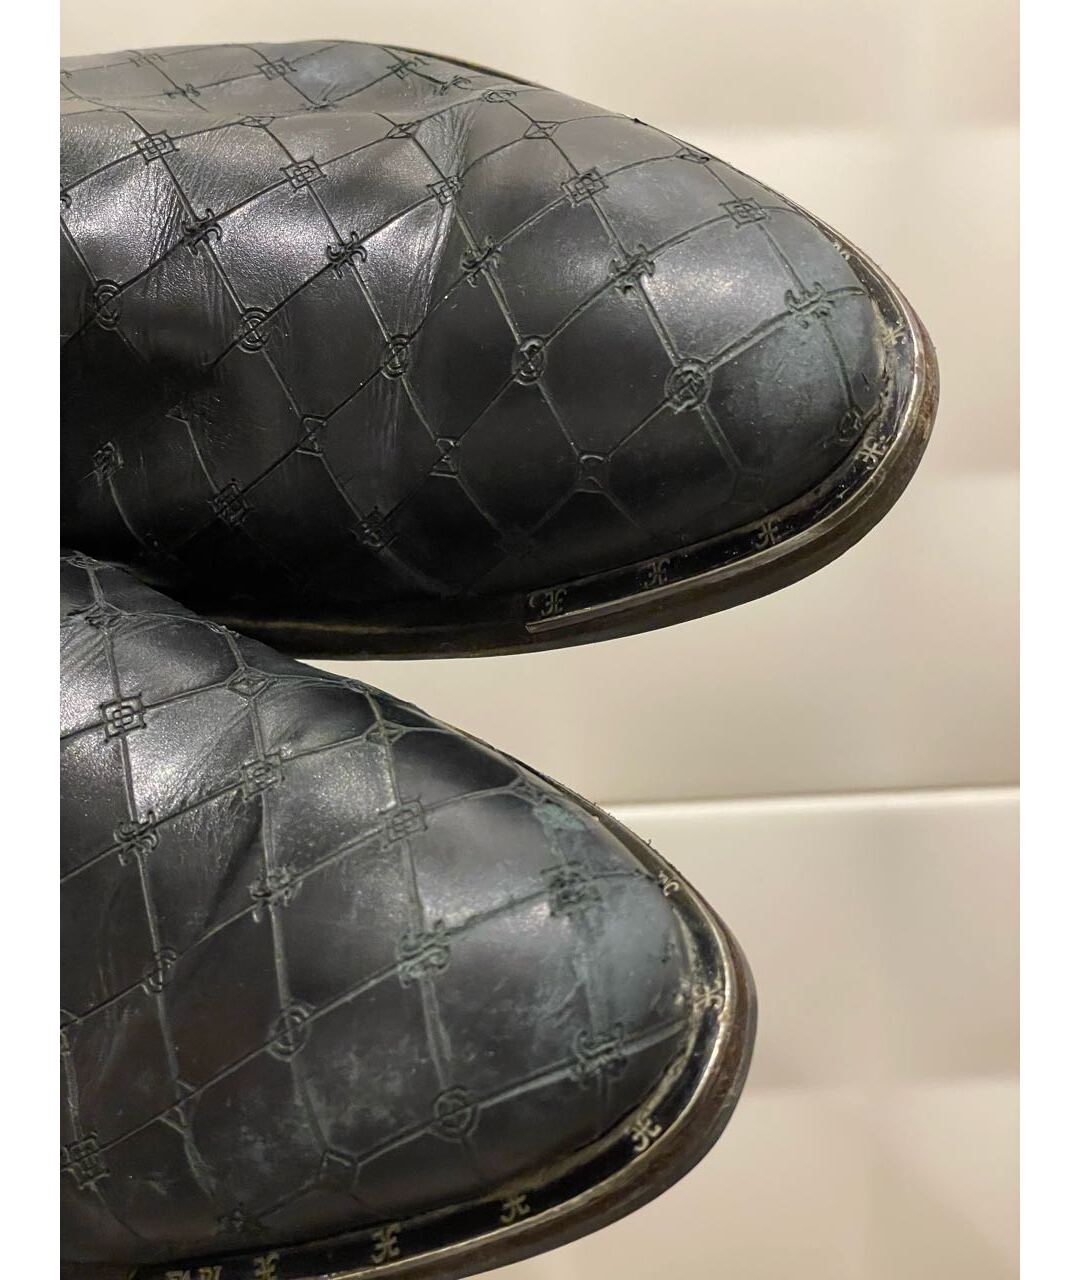 FABI Черные кожаные высокие ботинки, фото 7